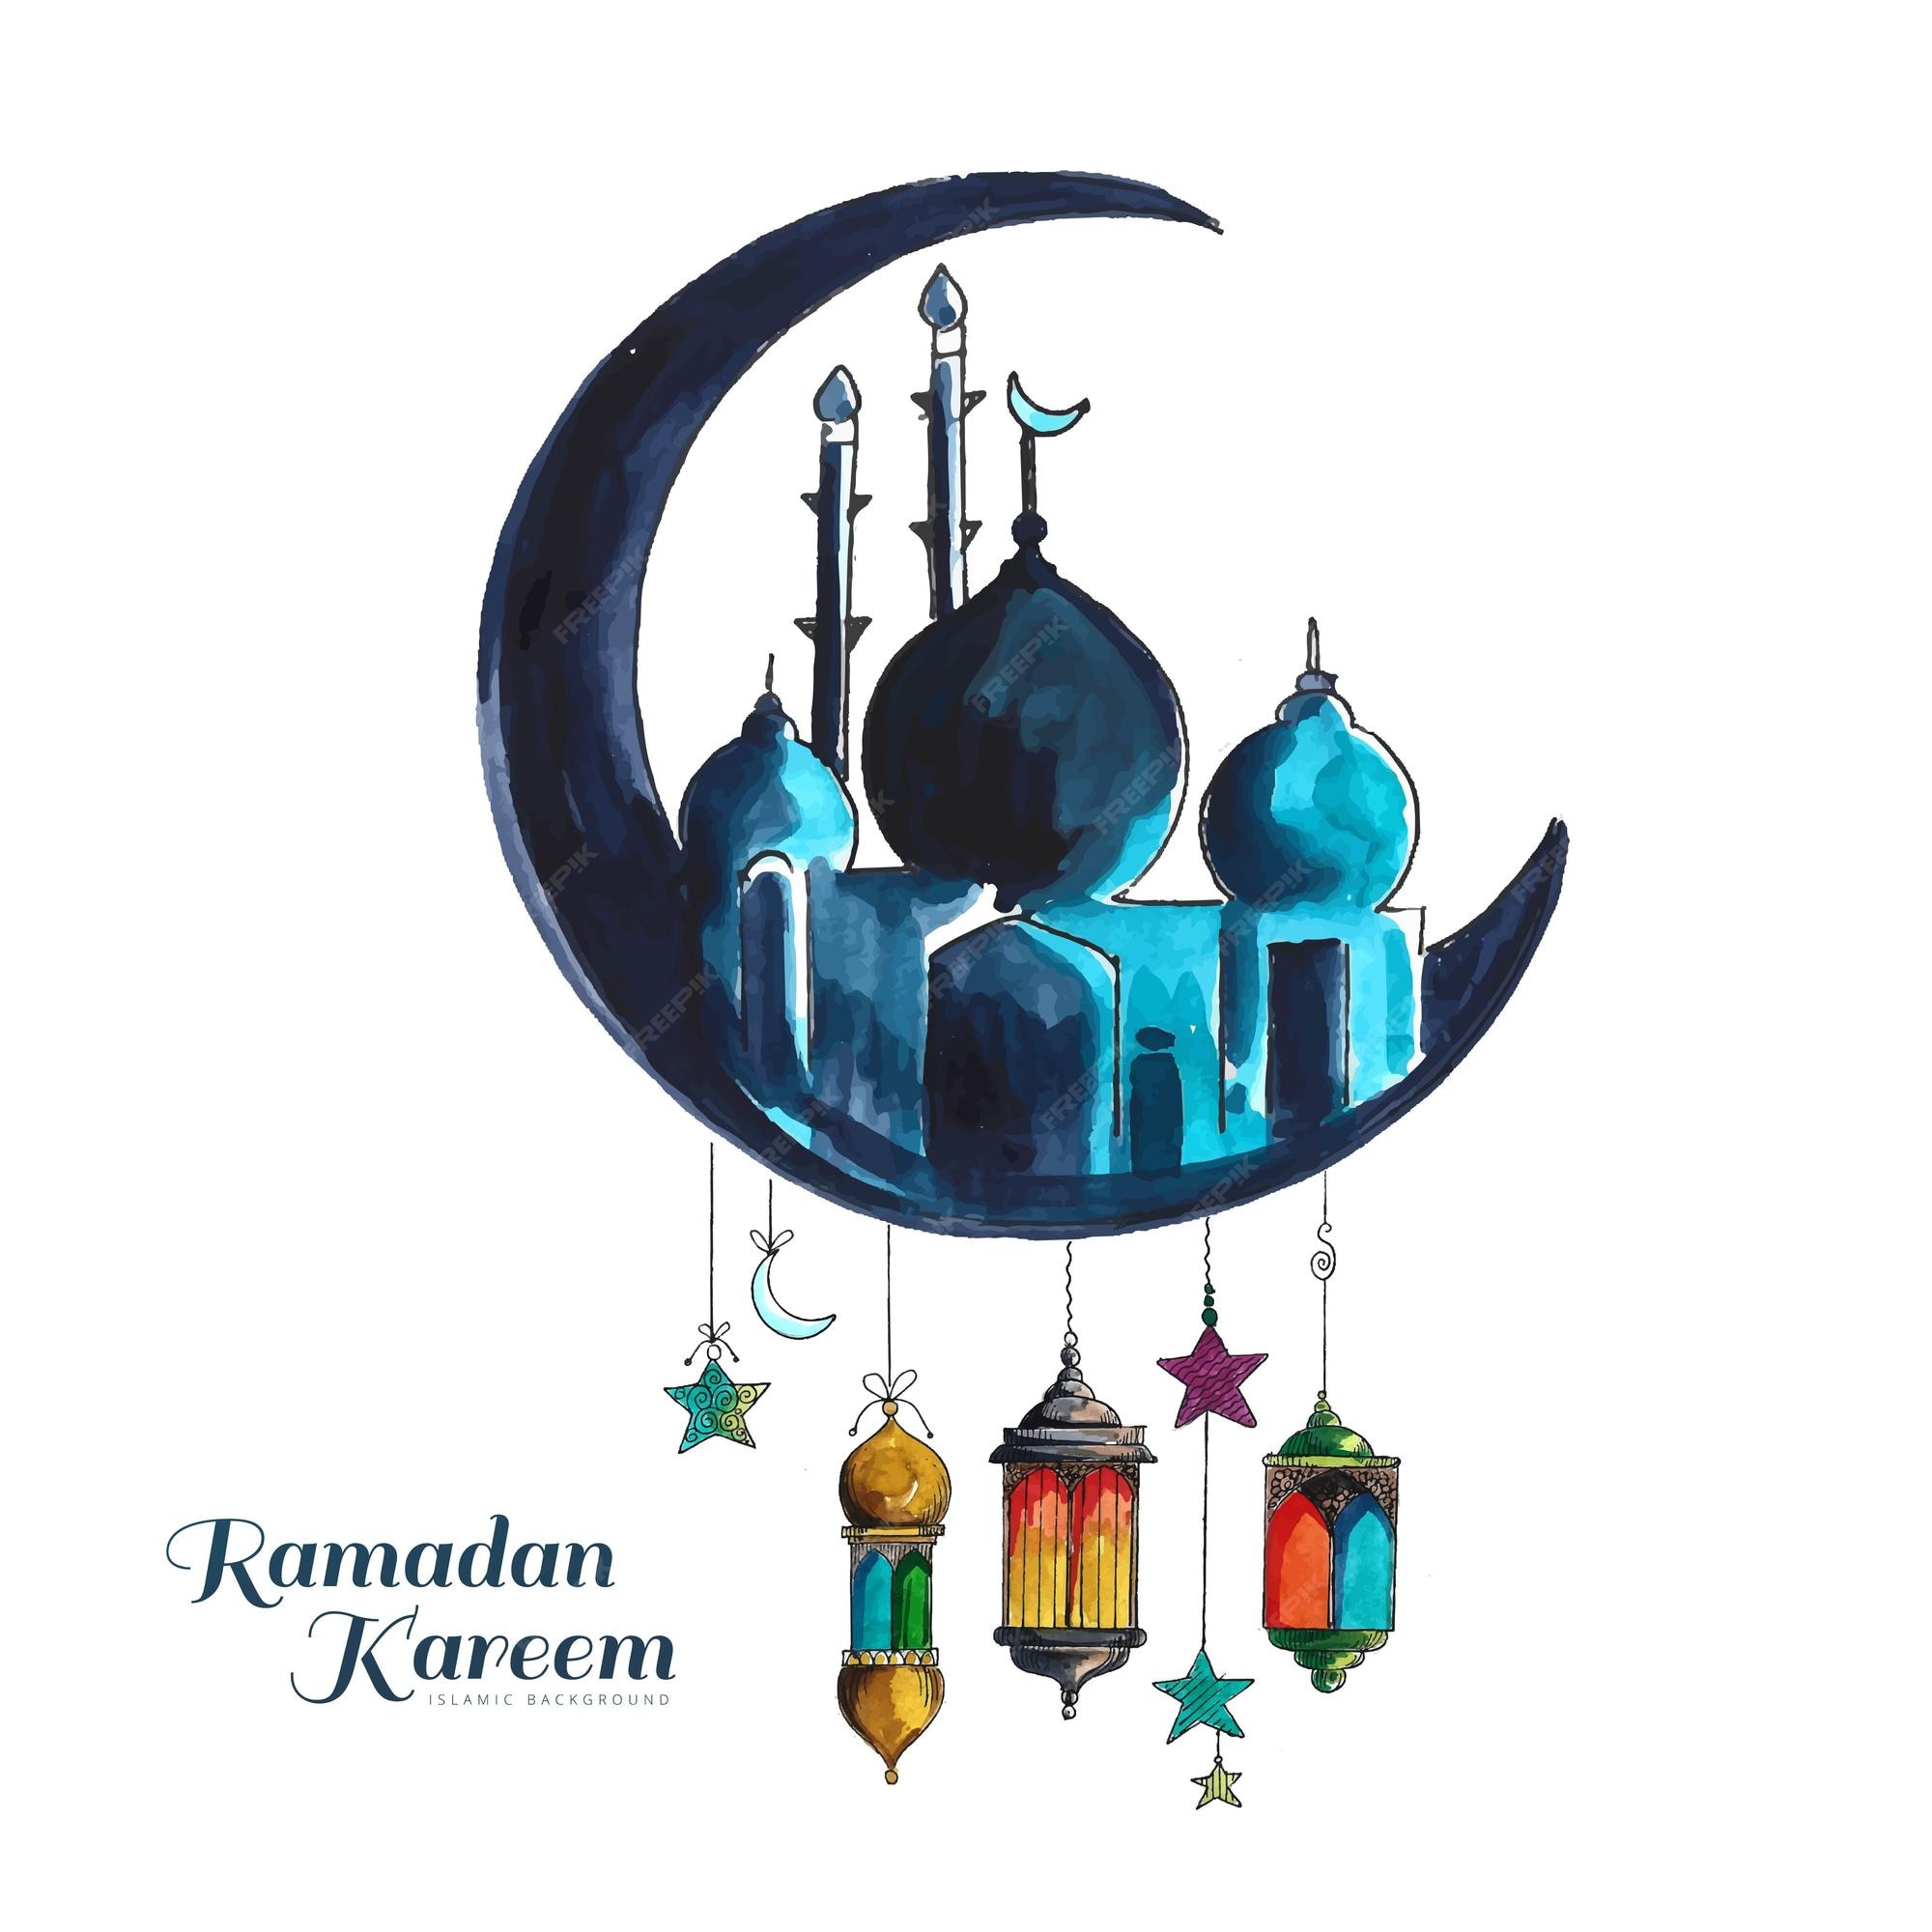 Ramadan Kareem! Bạn có muốn tìm hiểu thêm về những truyền thống và nghi thức trong tháng Ramadan? Hãy xem hình ảnh liên quan để khám phá thế giới đầy phong phú của đạo Hồi.